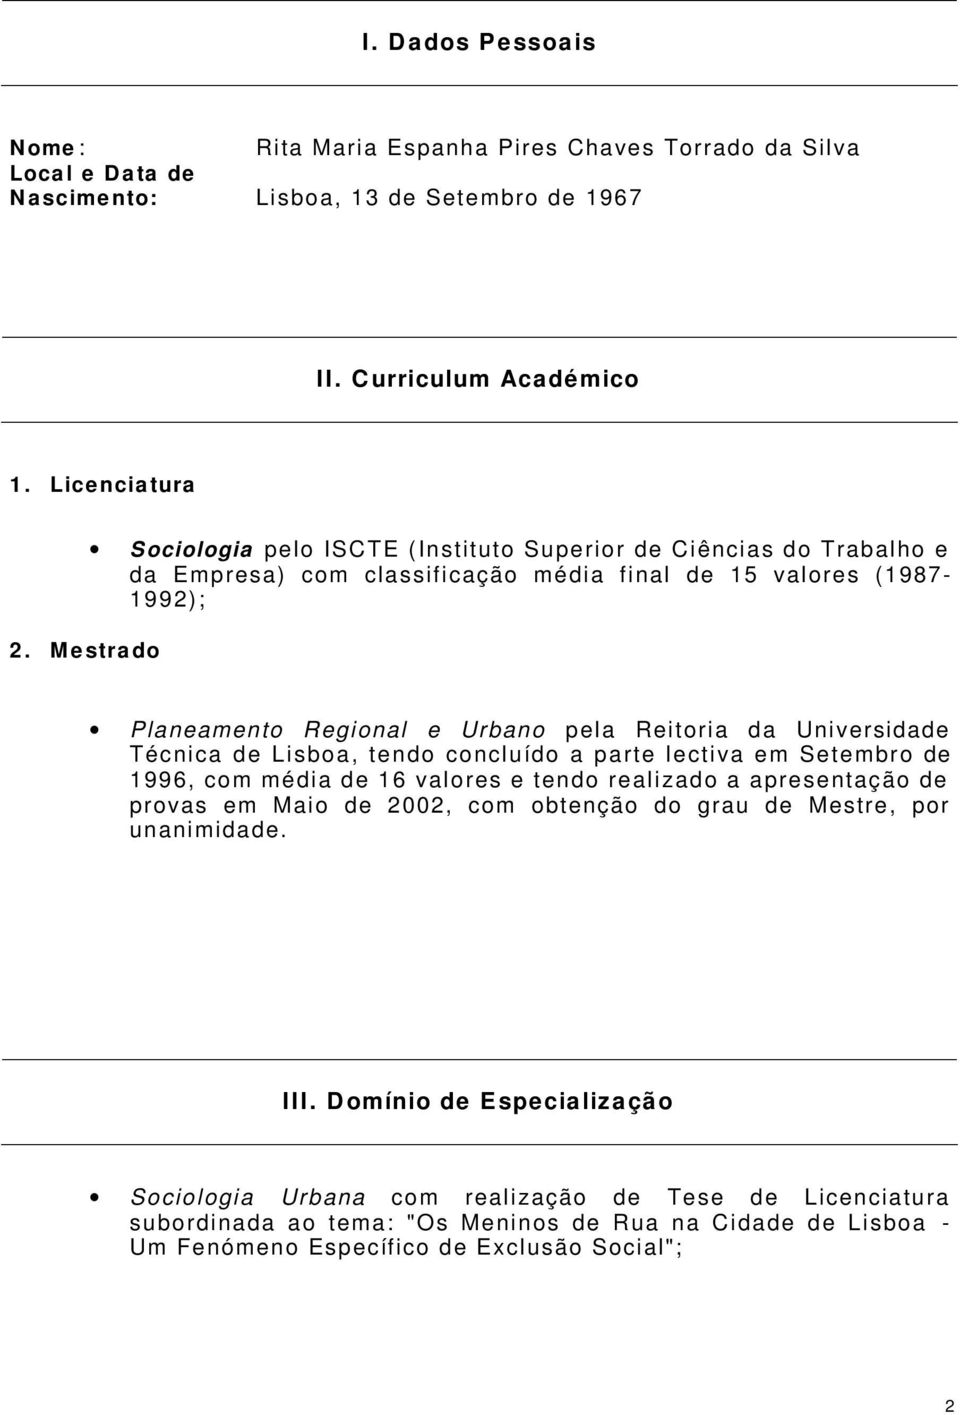 Universidade Técnica de Lisboa, tendo concluído a parte lectiva em Setembro de 1996, com média de 16 valores e tendo realizado a apresentação de provas em Maio de 2002, com obtenção do grau de